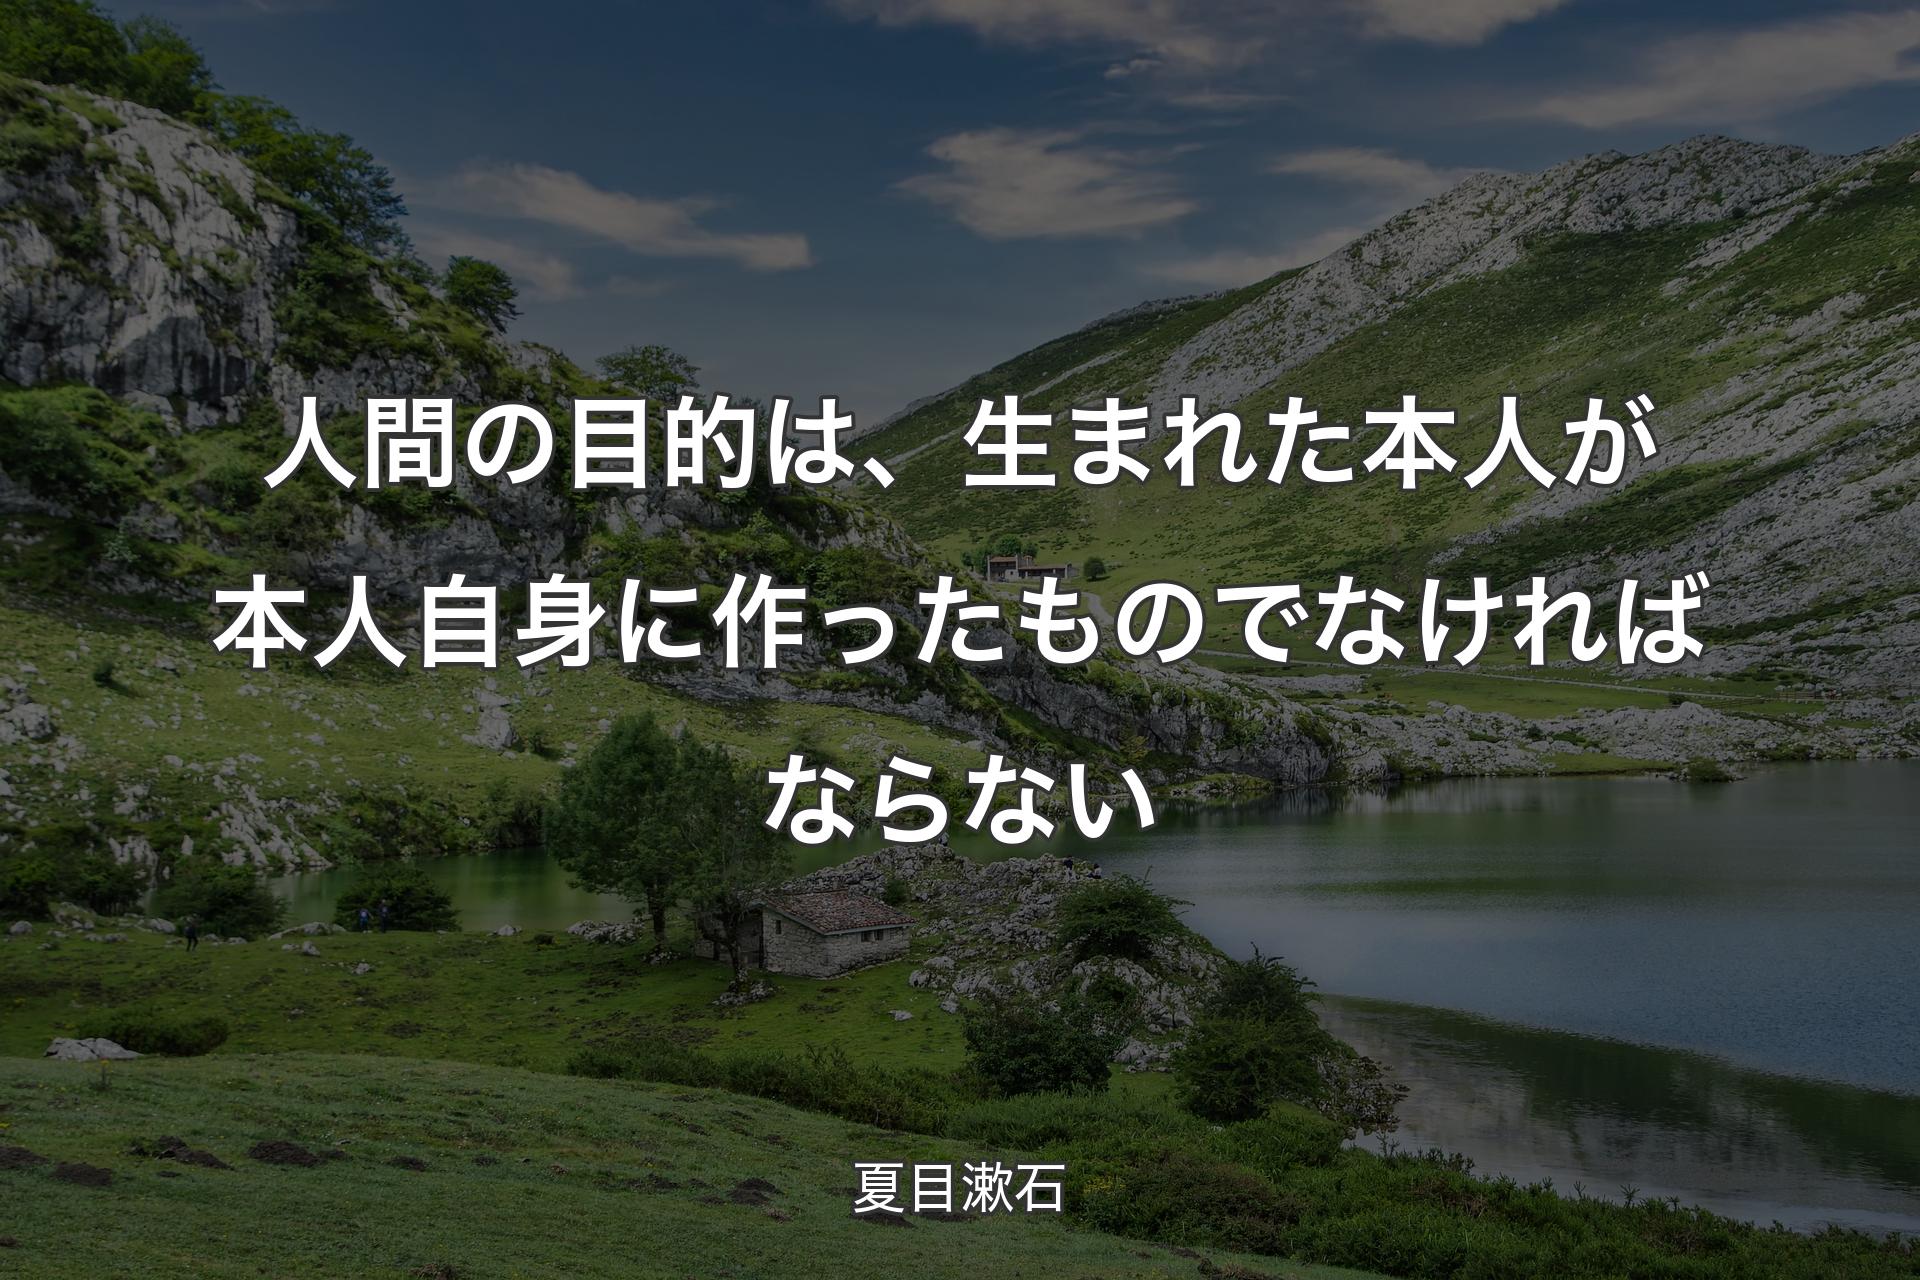 【背景1】人間の目的は、生まれた本人が本人自身に作ったものでなければならない - 夏目漱石